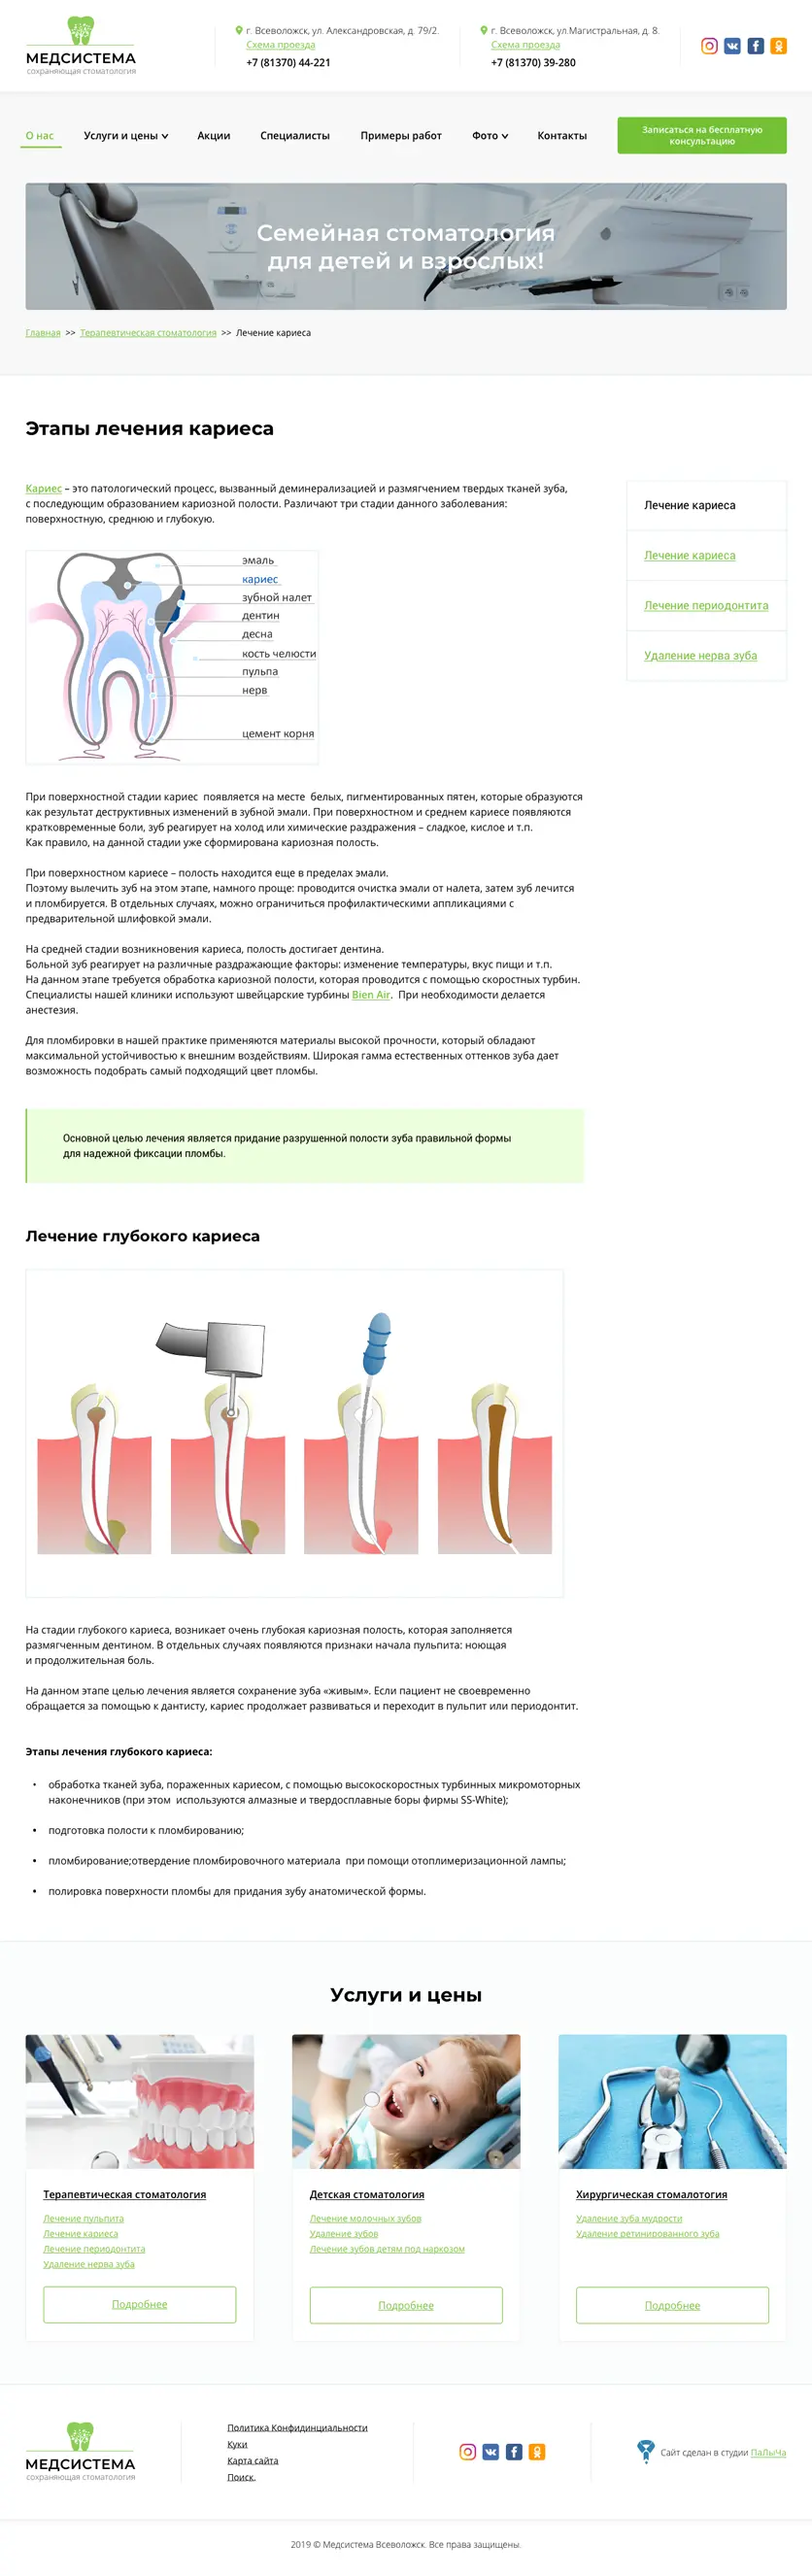 Макет внутренней страницы сайта стоматологии МедСистема